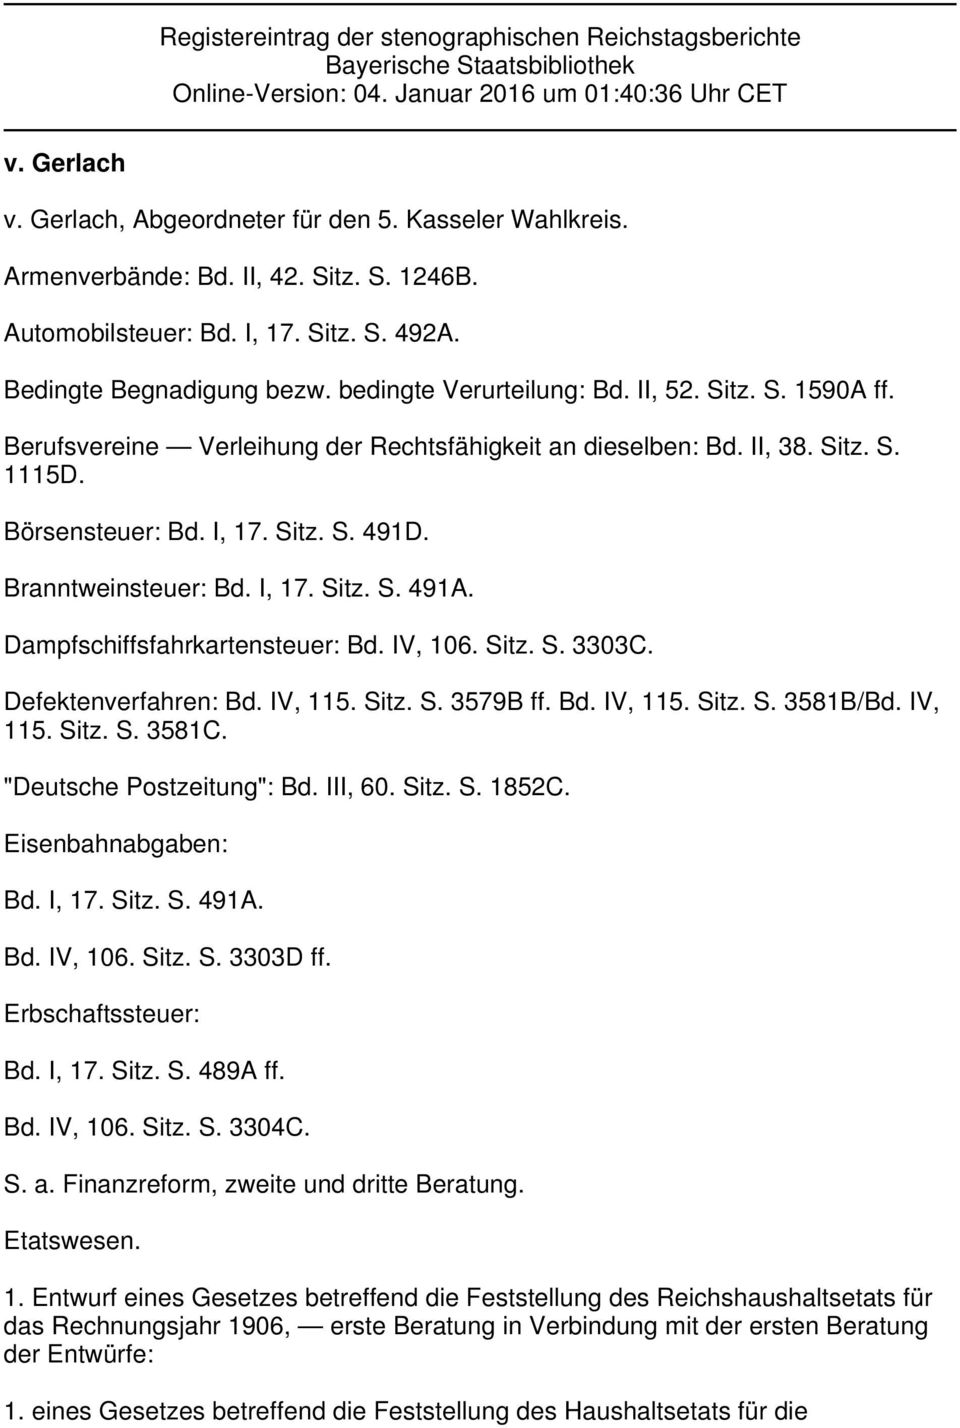 Berufsvereine Verleihung der Rechtsfähigkeit an dieselben: Bd. II, 38. Sitz. S. 1115D. Börsensteuer: Bd. I, 17. Sitz. S. 491D. Branntweinsteuer: Bd. I, 17. Sitz. S. 491A.